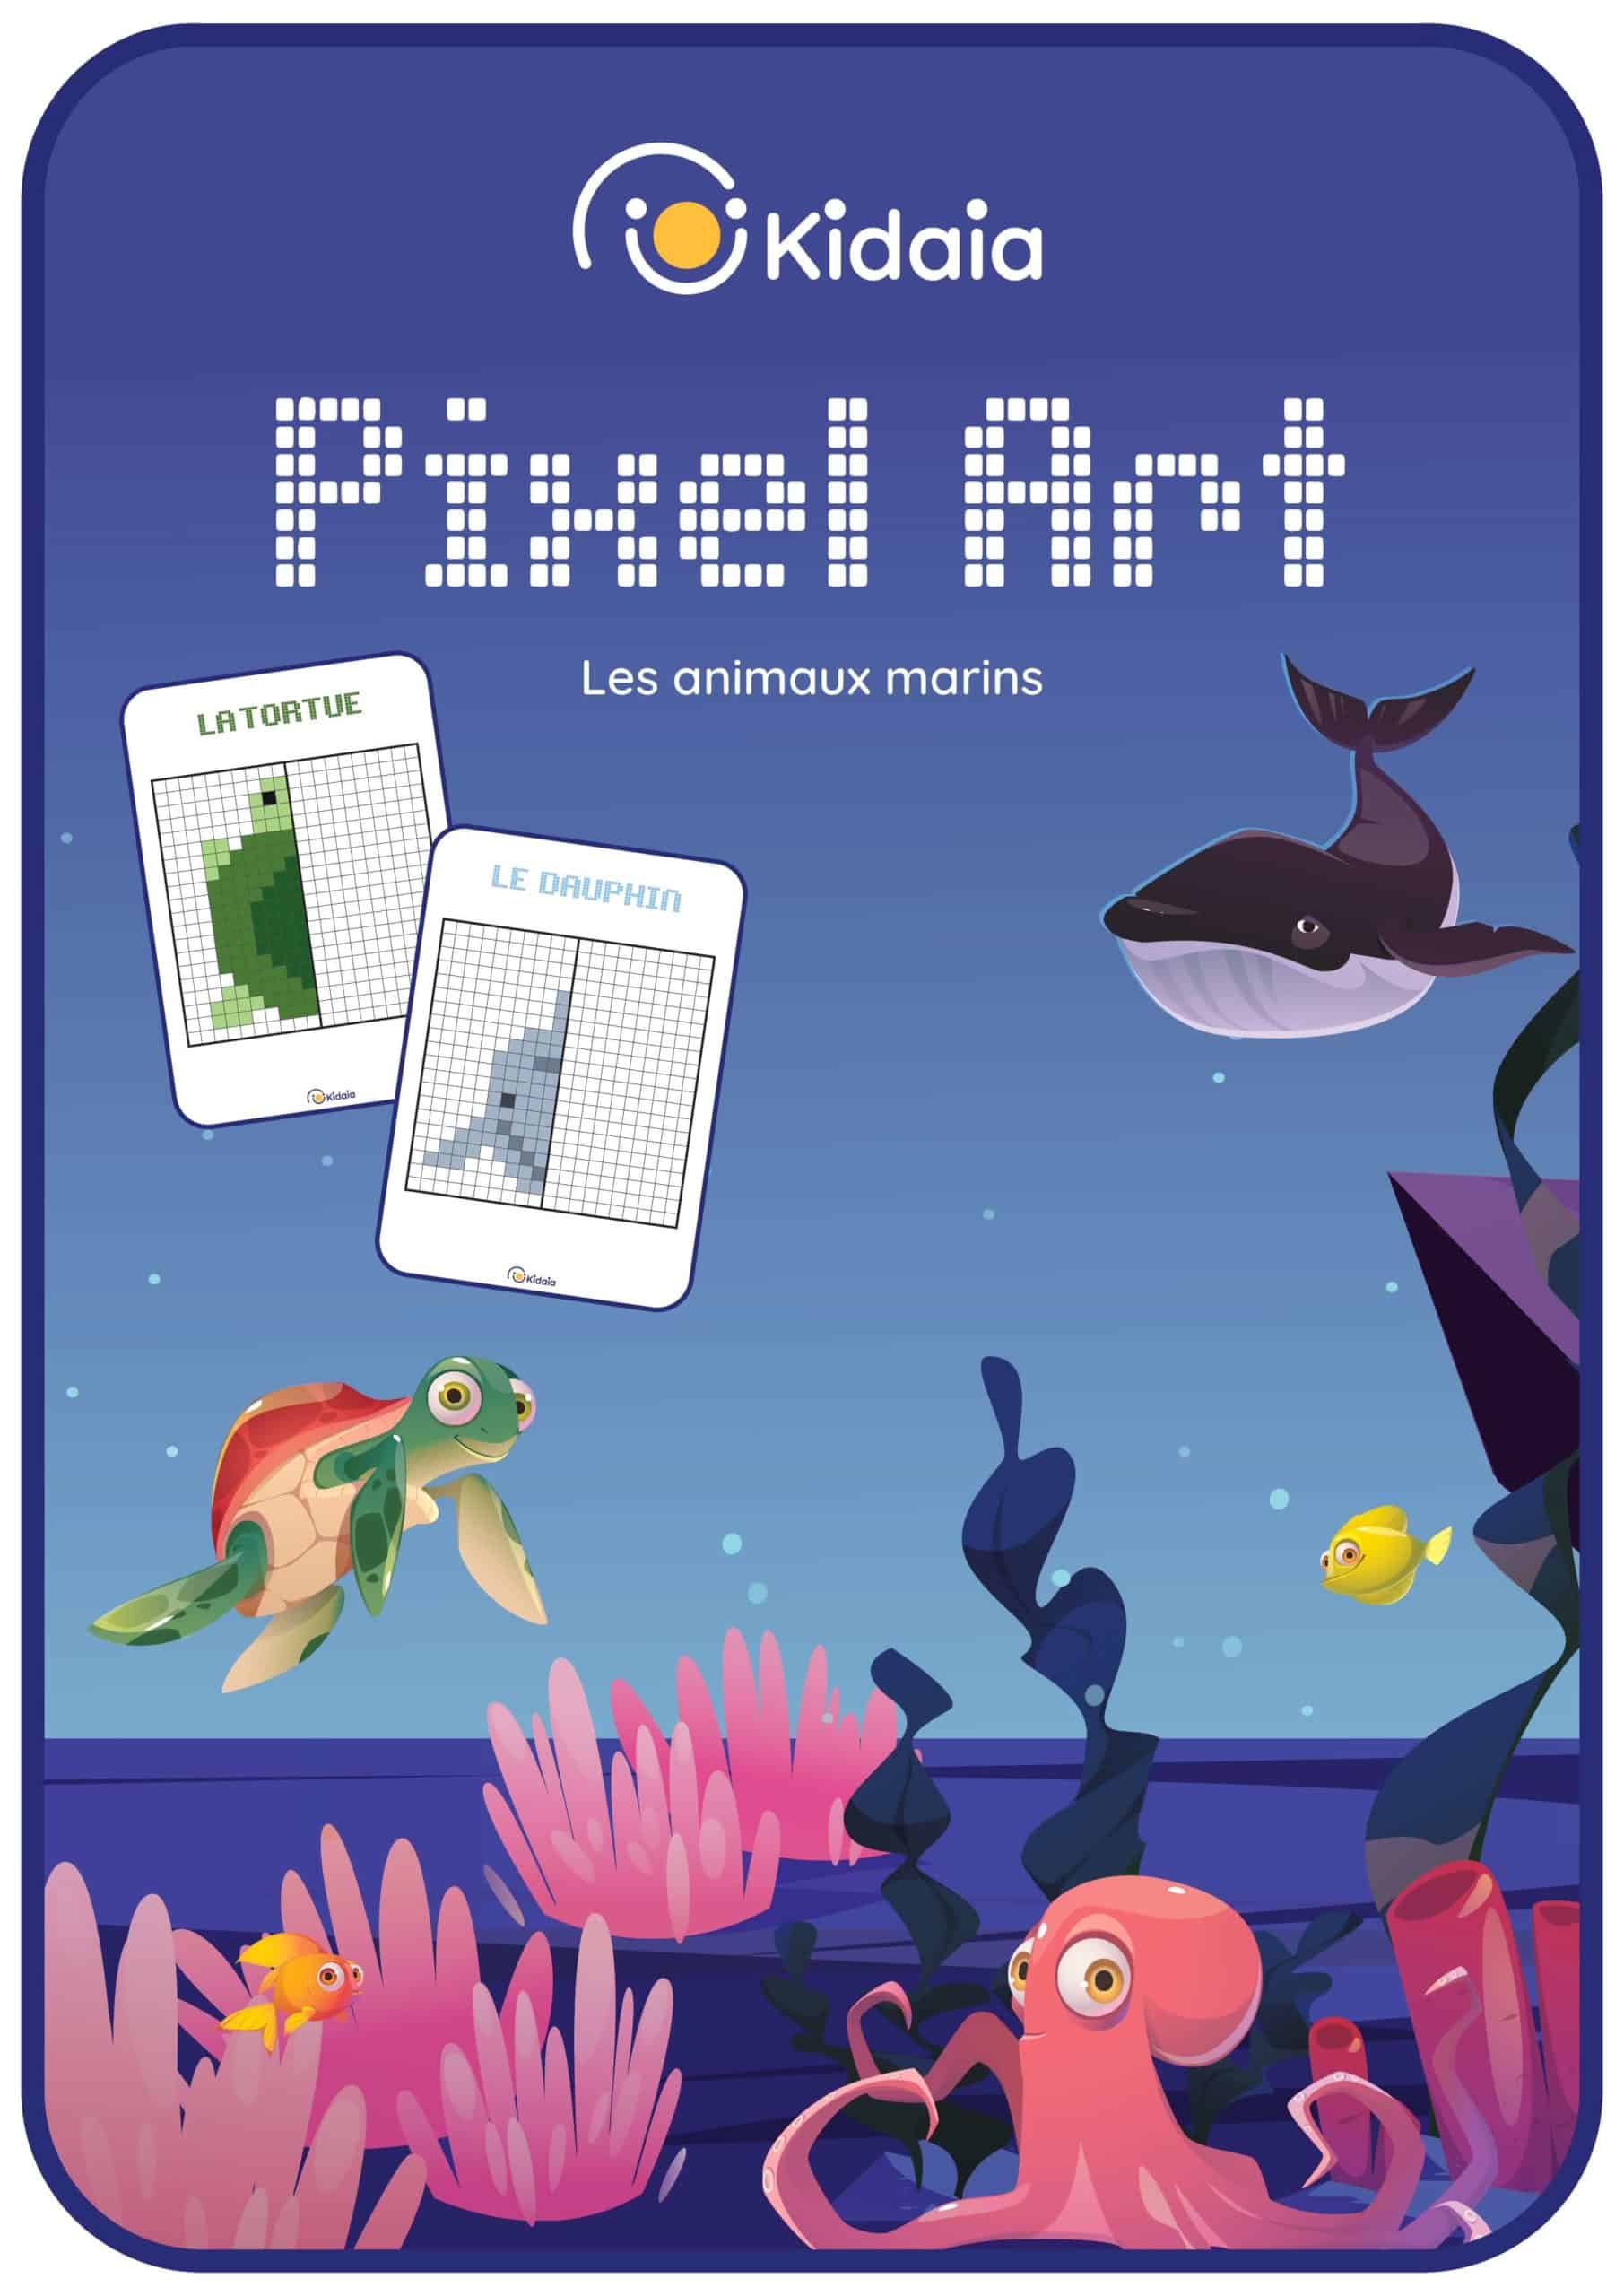 Couverture de notre livret de pixels arts sur les animaux marins, comportant une tortue, un crabe, une baleine, une méduse, une étoile de mer, un dauphin, un poulpe, un requin, un morse et un manchot.